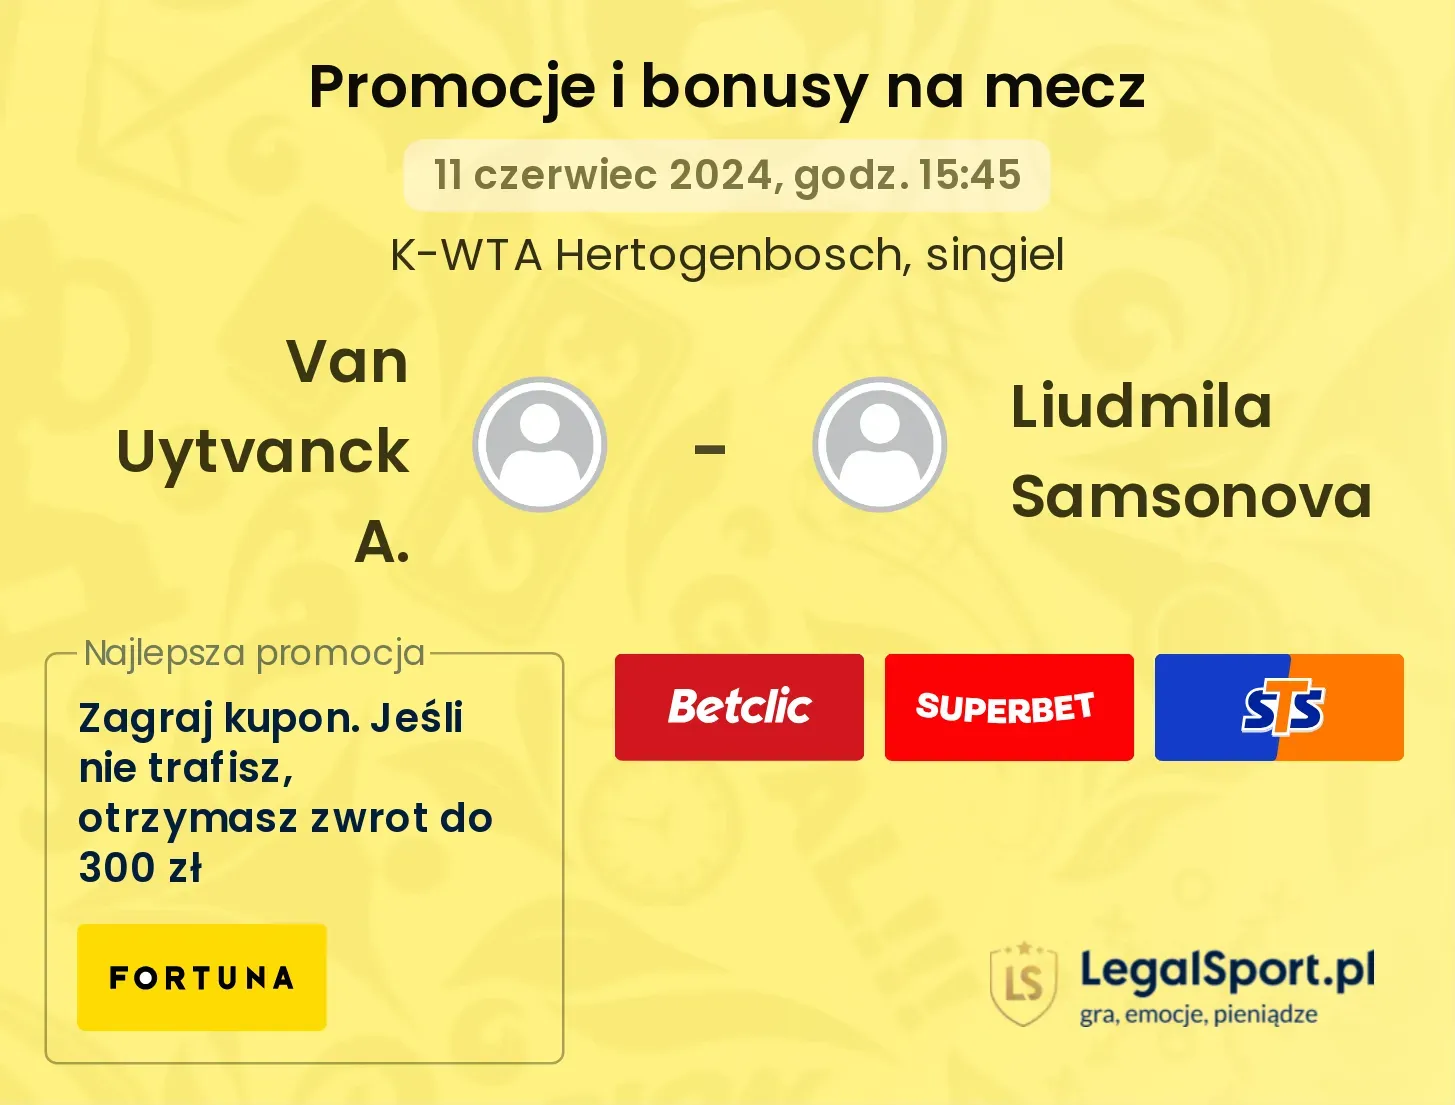 Van Uytvanck A. - Liudmila Samsonova promocje bonusy na mecz